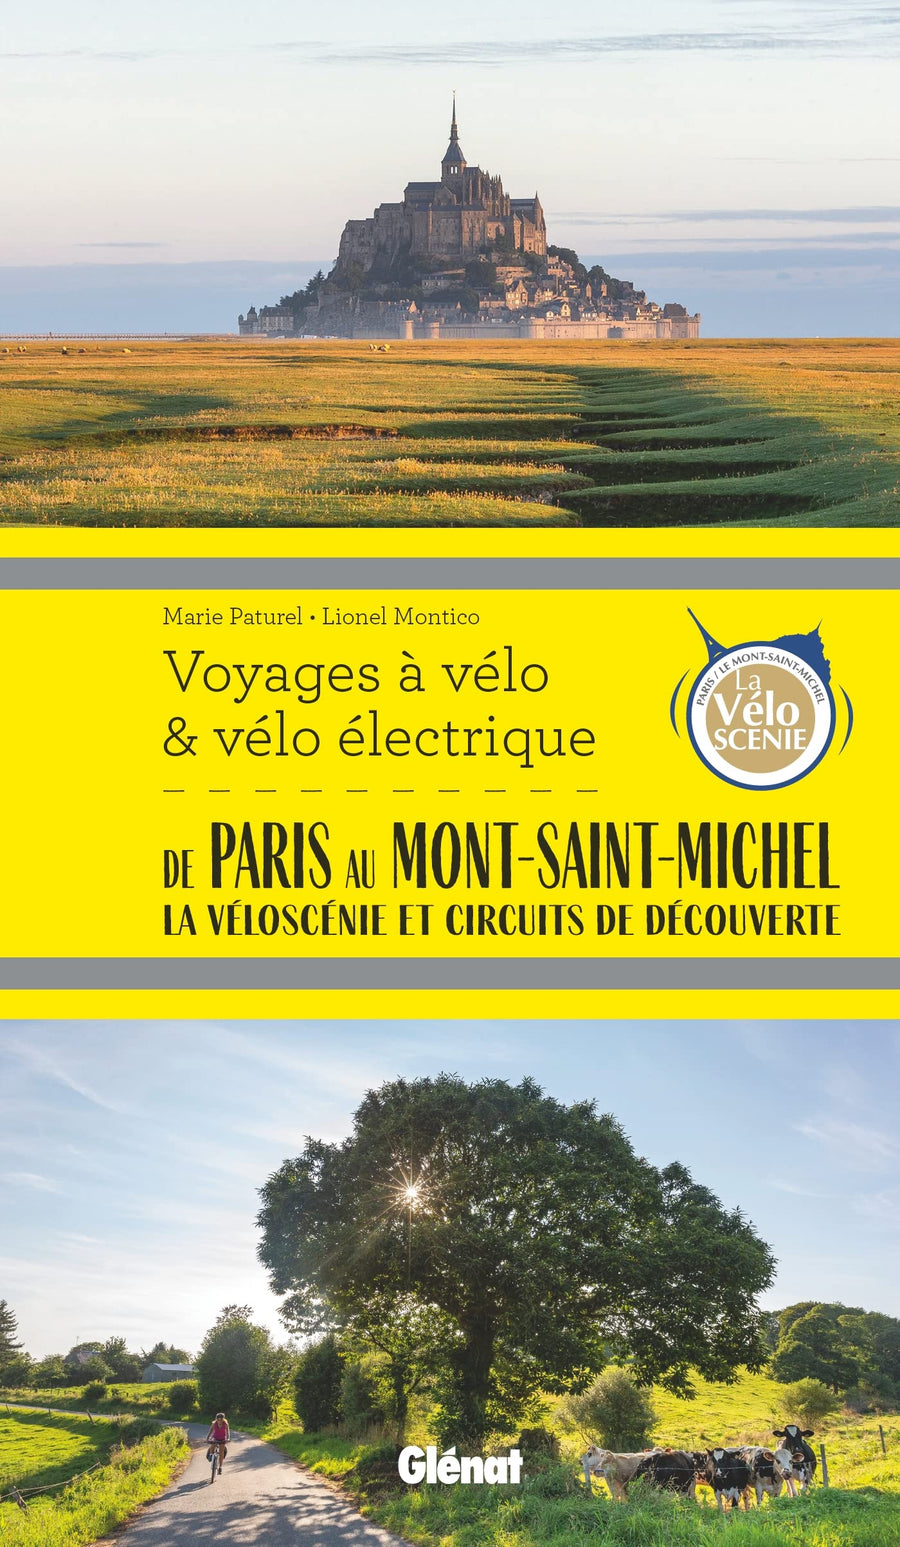 Guide - Voyages à vélo et vélo électrique : De Paris au Mont-Saint-Michel, Véloscénie et circuits de découverte | Glénat guide vélo Glénat 